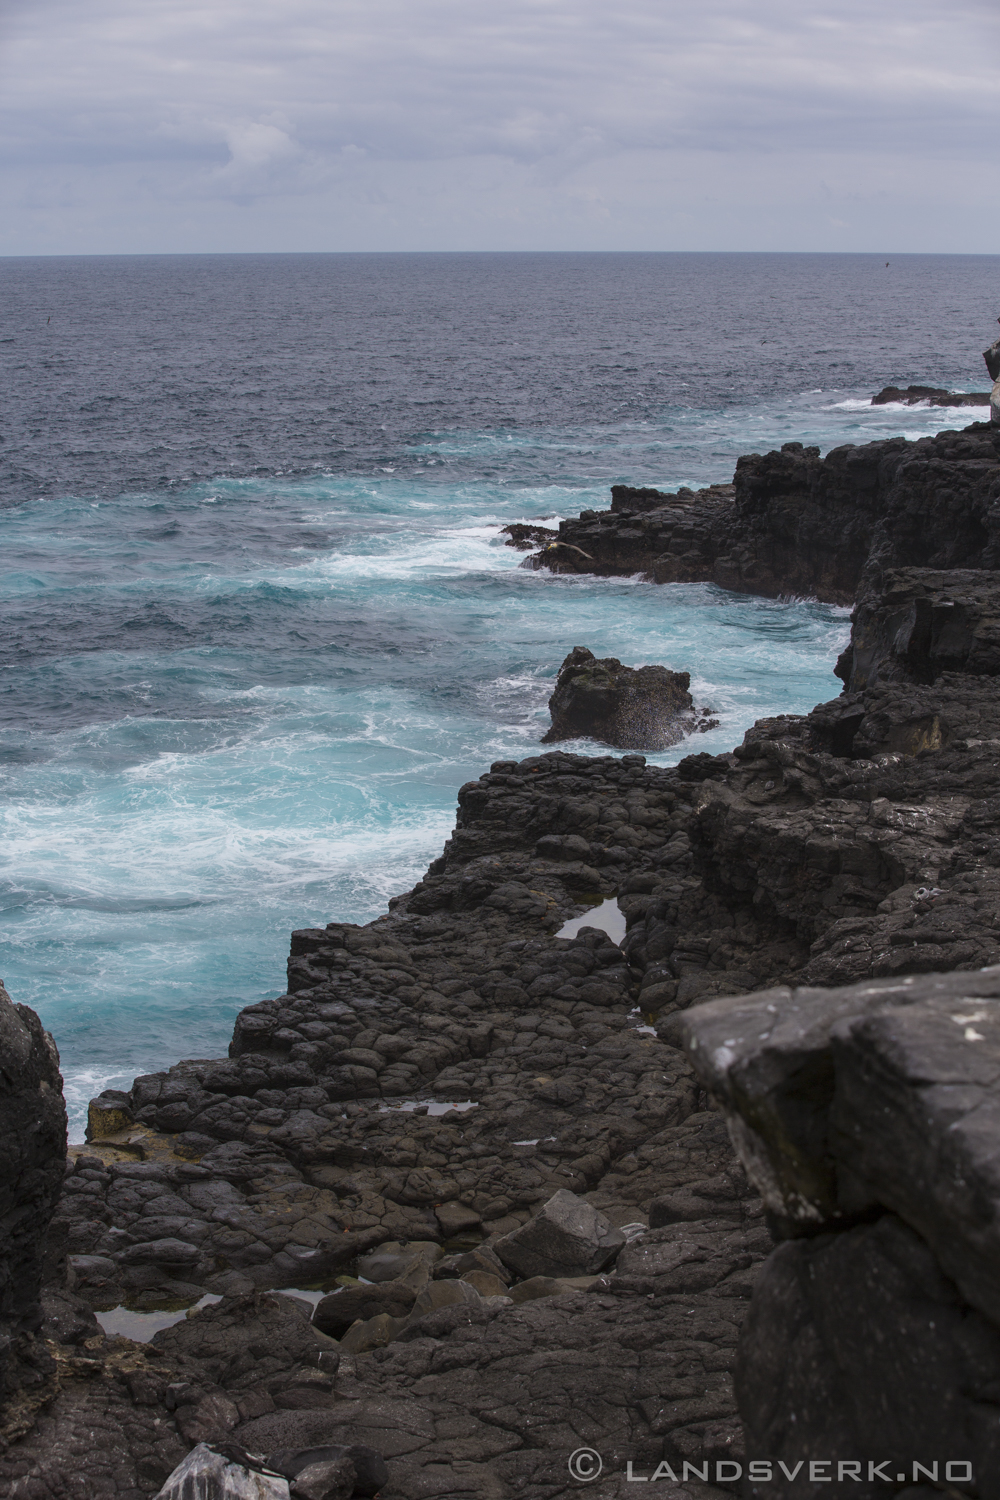 Punta Suarez, Isla Espanola, Galapagos. 

(Canon EOS 5D Mark III / Canon EF 70-200mm f/2.8 L IS II USM)